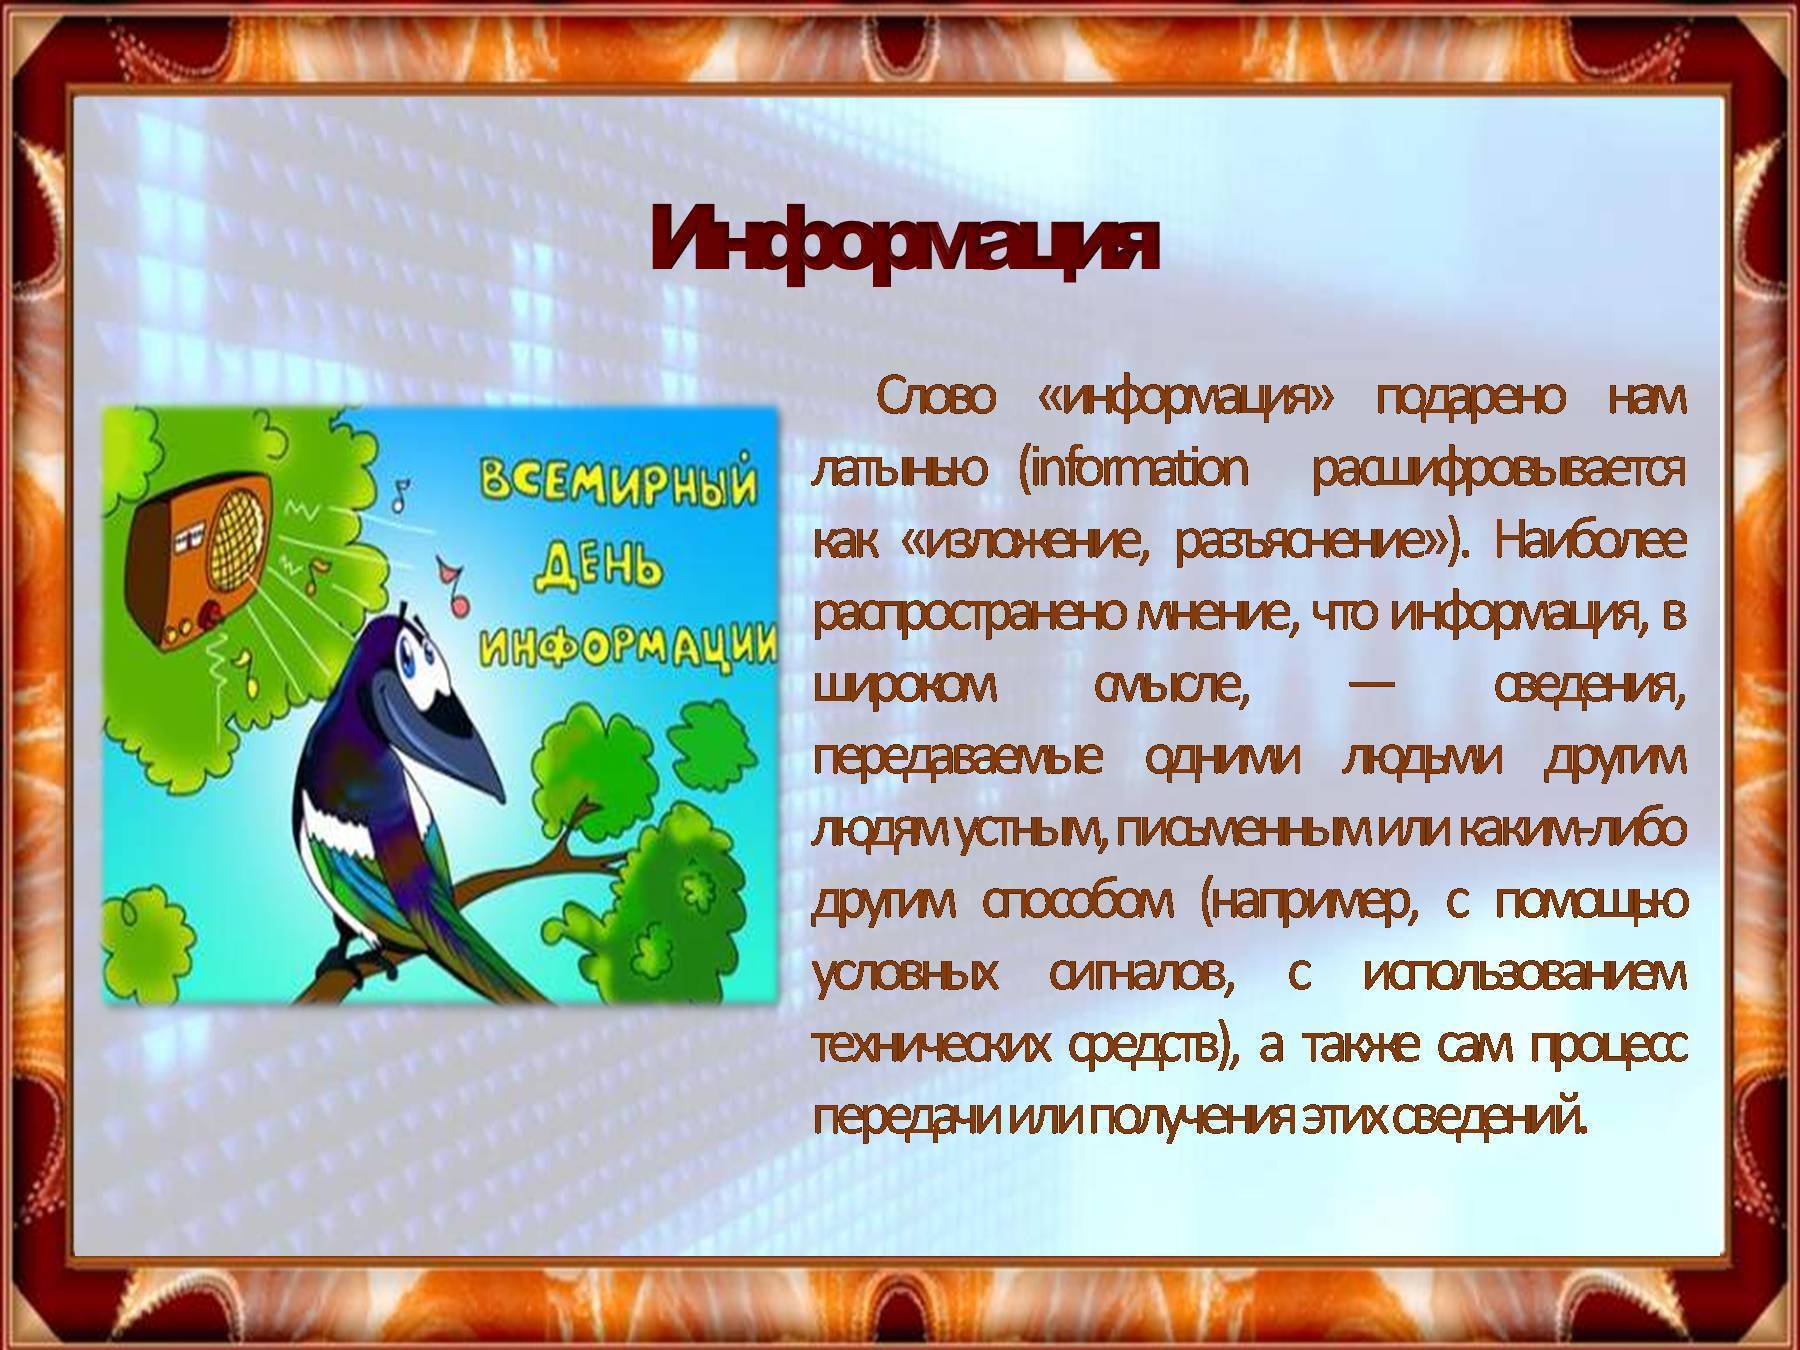 Всемирный день информации | fiestino.ru